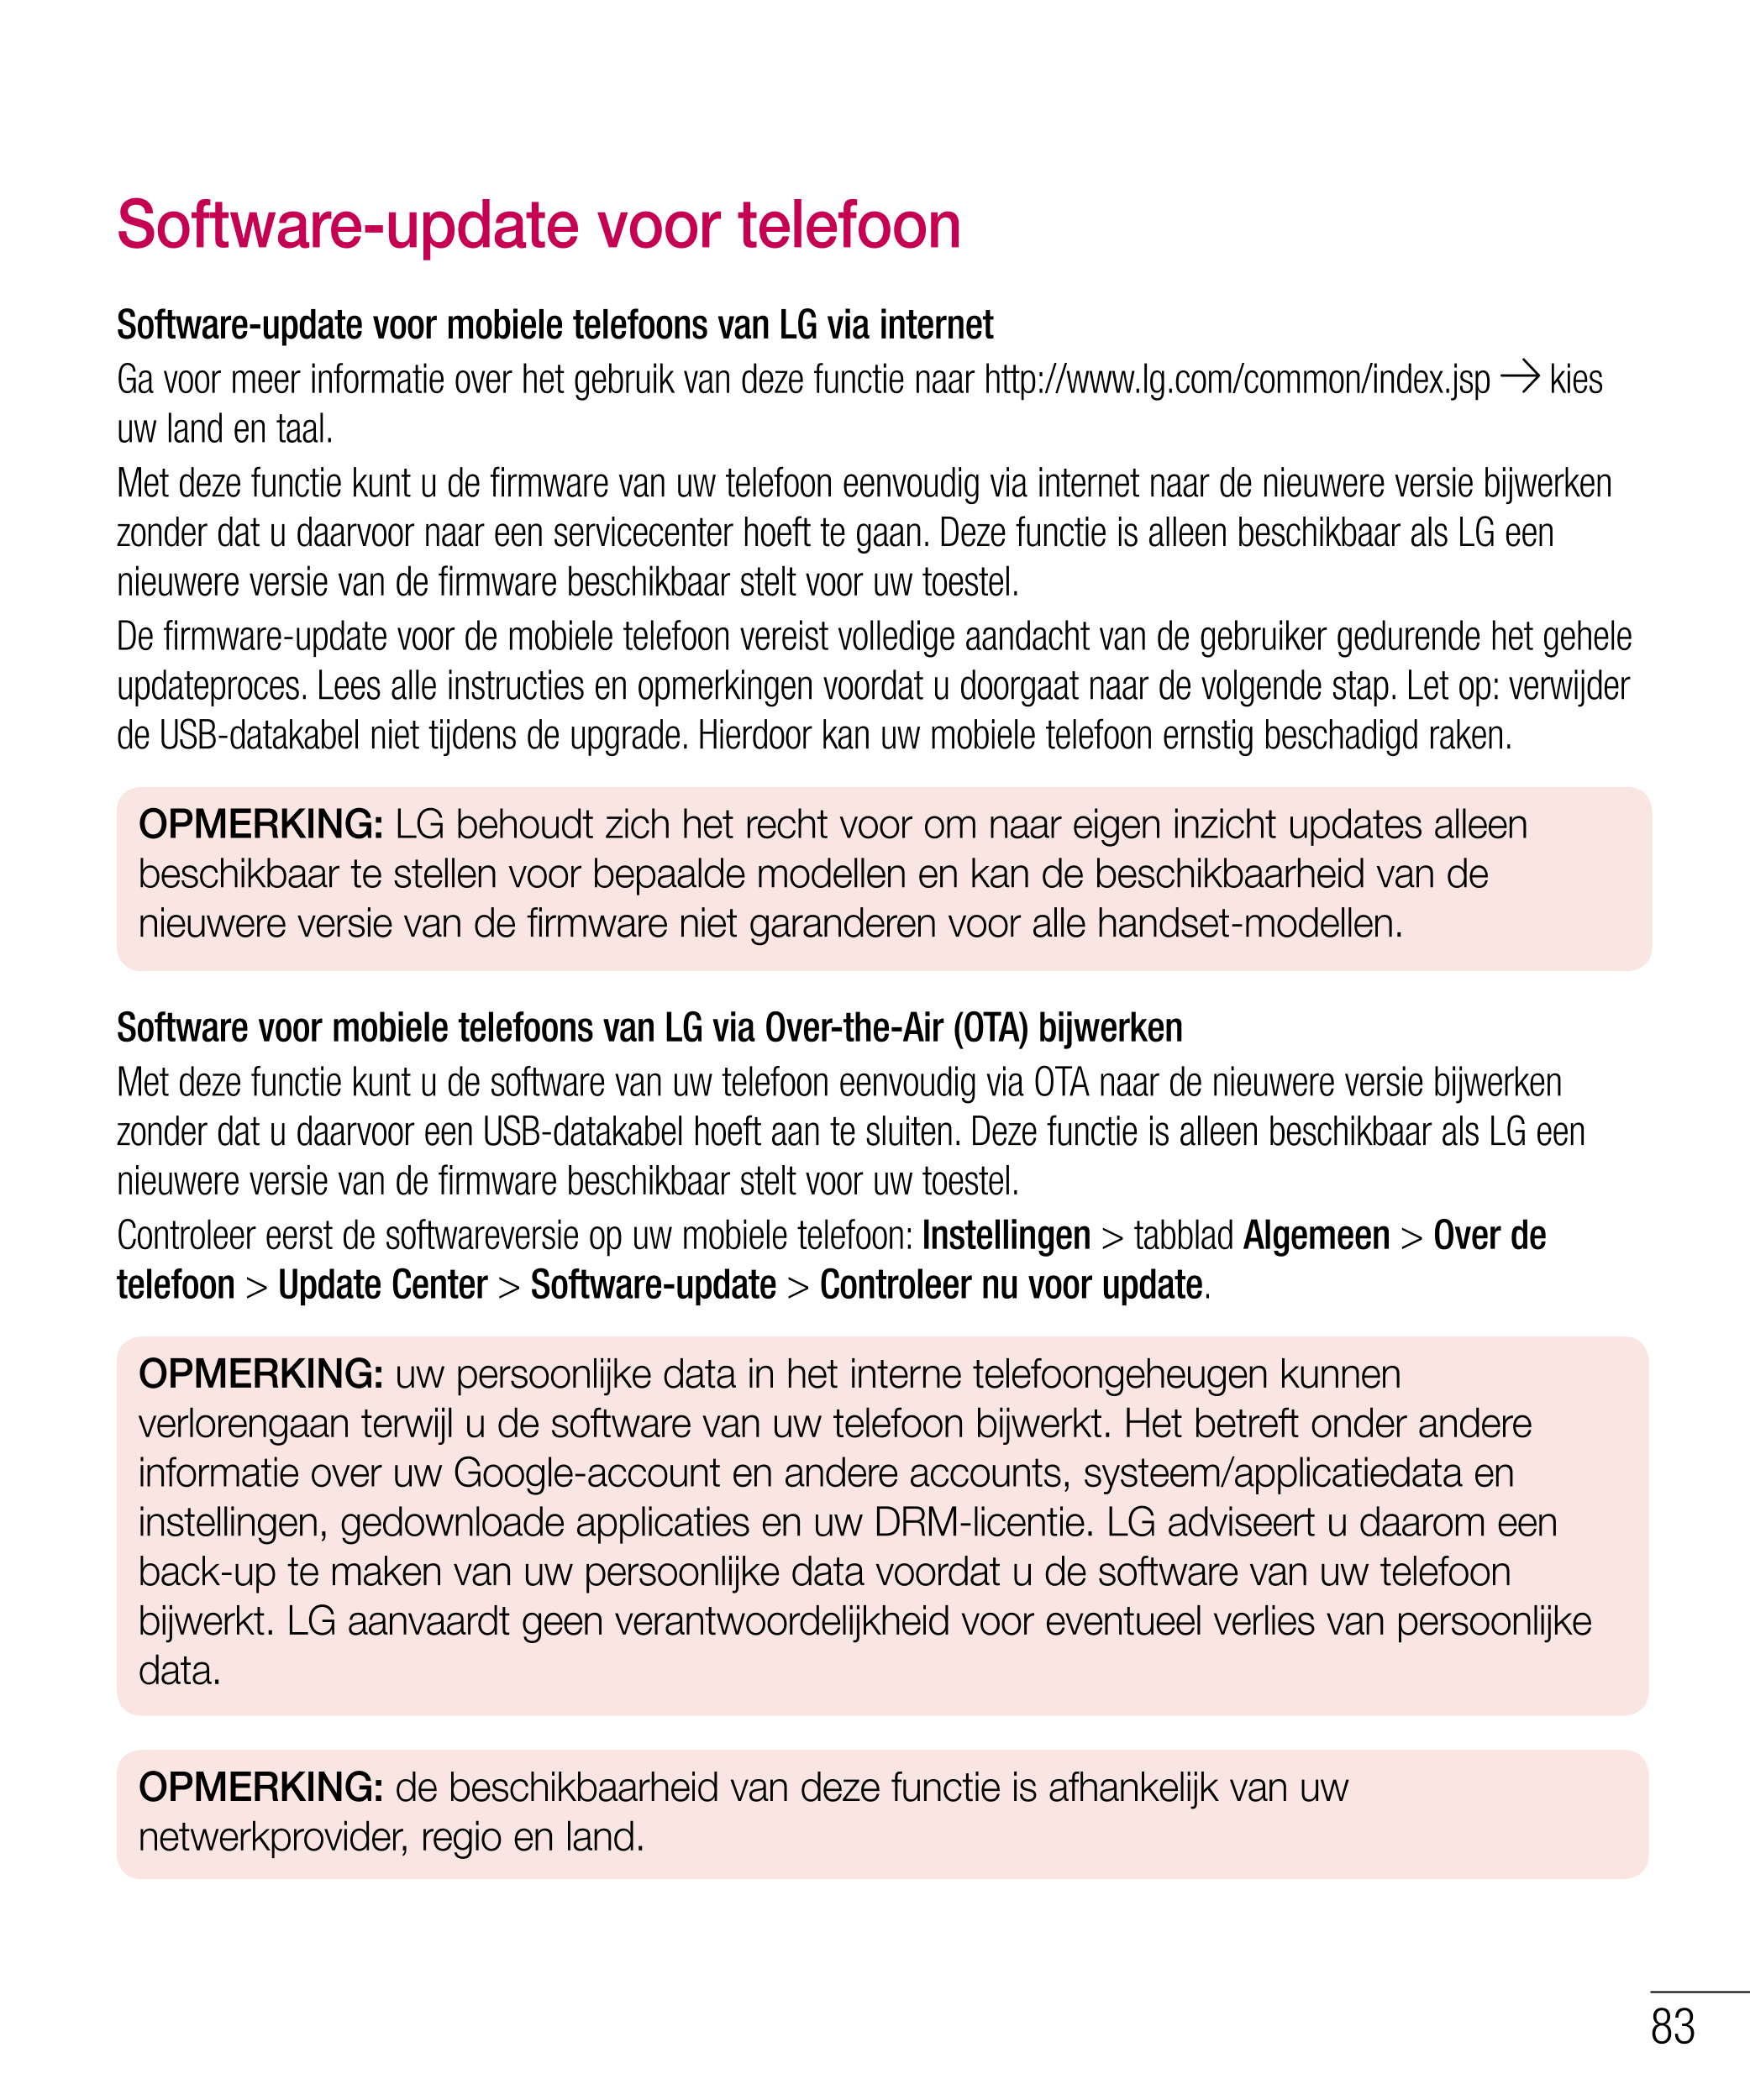 Software-update voor telefoon
Software-update voor mobiele telefoons van LG via internet
Ga voor meer informatie over het gebrui